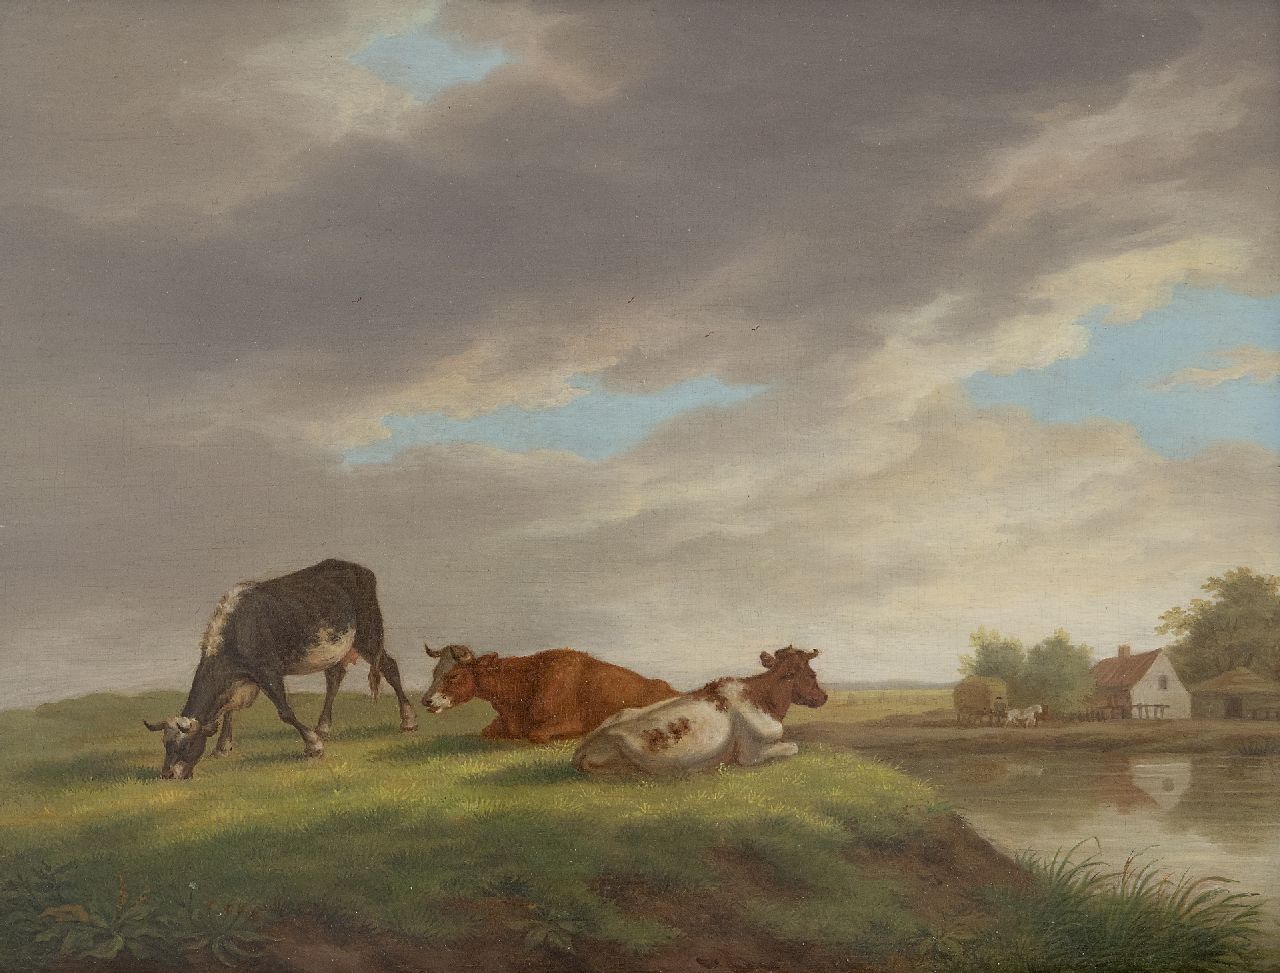 Burgh H.A. van der | Hendrik Adam van der Burgh | Gemälde zum Verkauf angeboten | Kühe in einer Landschaft mit Bauernhof, Öl auf Holz 20,4 x 26,3 cm, Unterzeichnet l.u. und datiert 1821